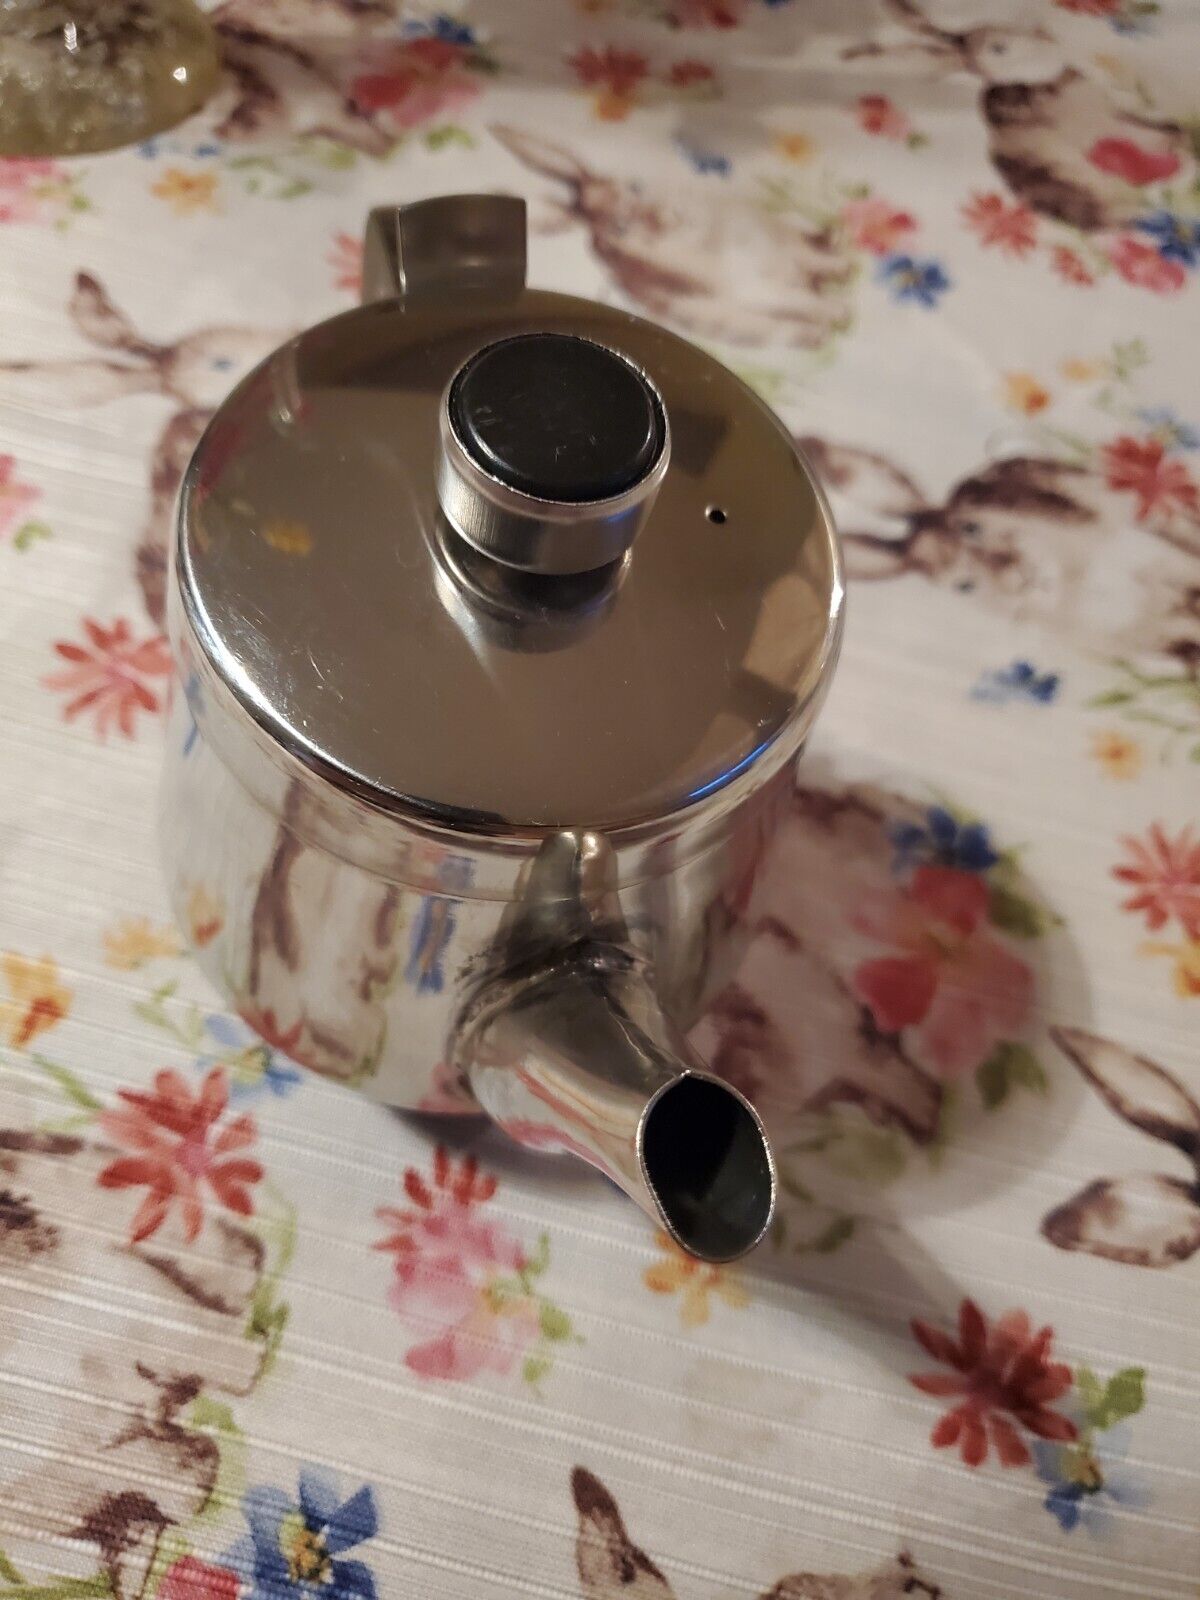 VTG Stainless Steel Teapot Flip Top Restaurant Style Black accent on handles